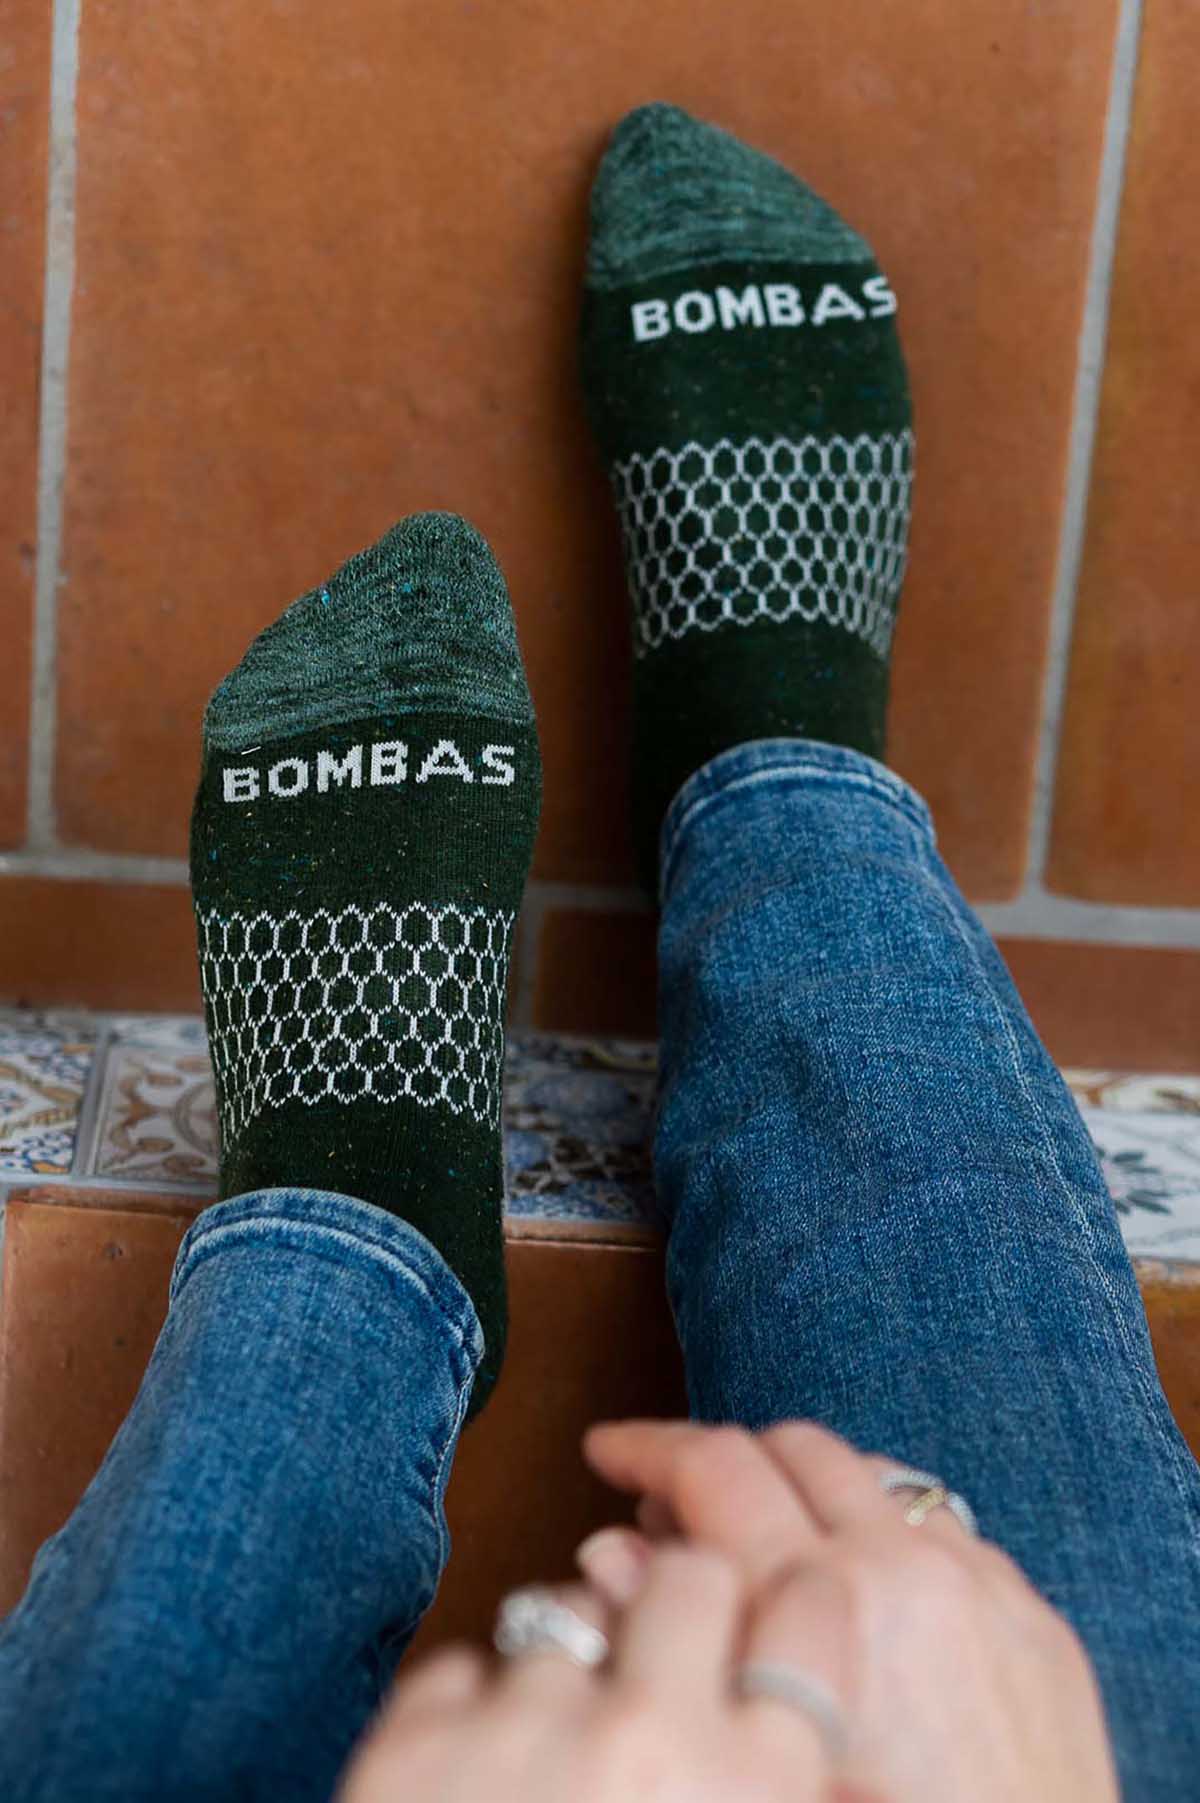 My Honest Bombas Socks Review